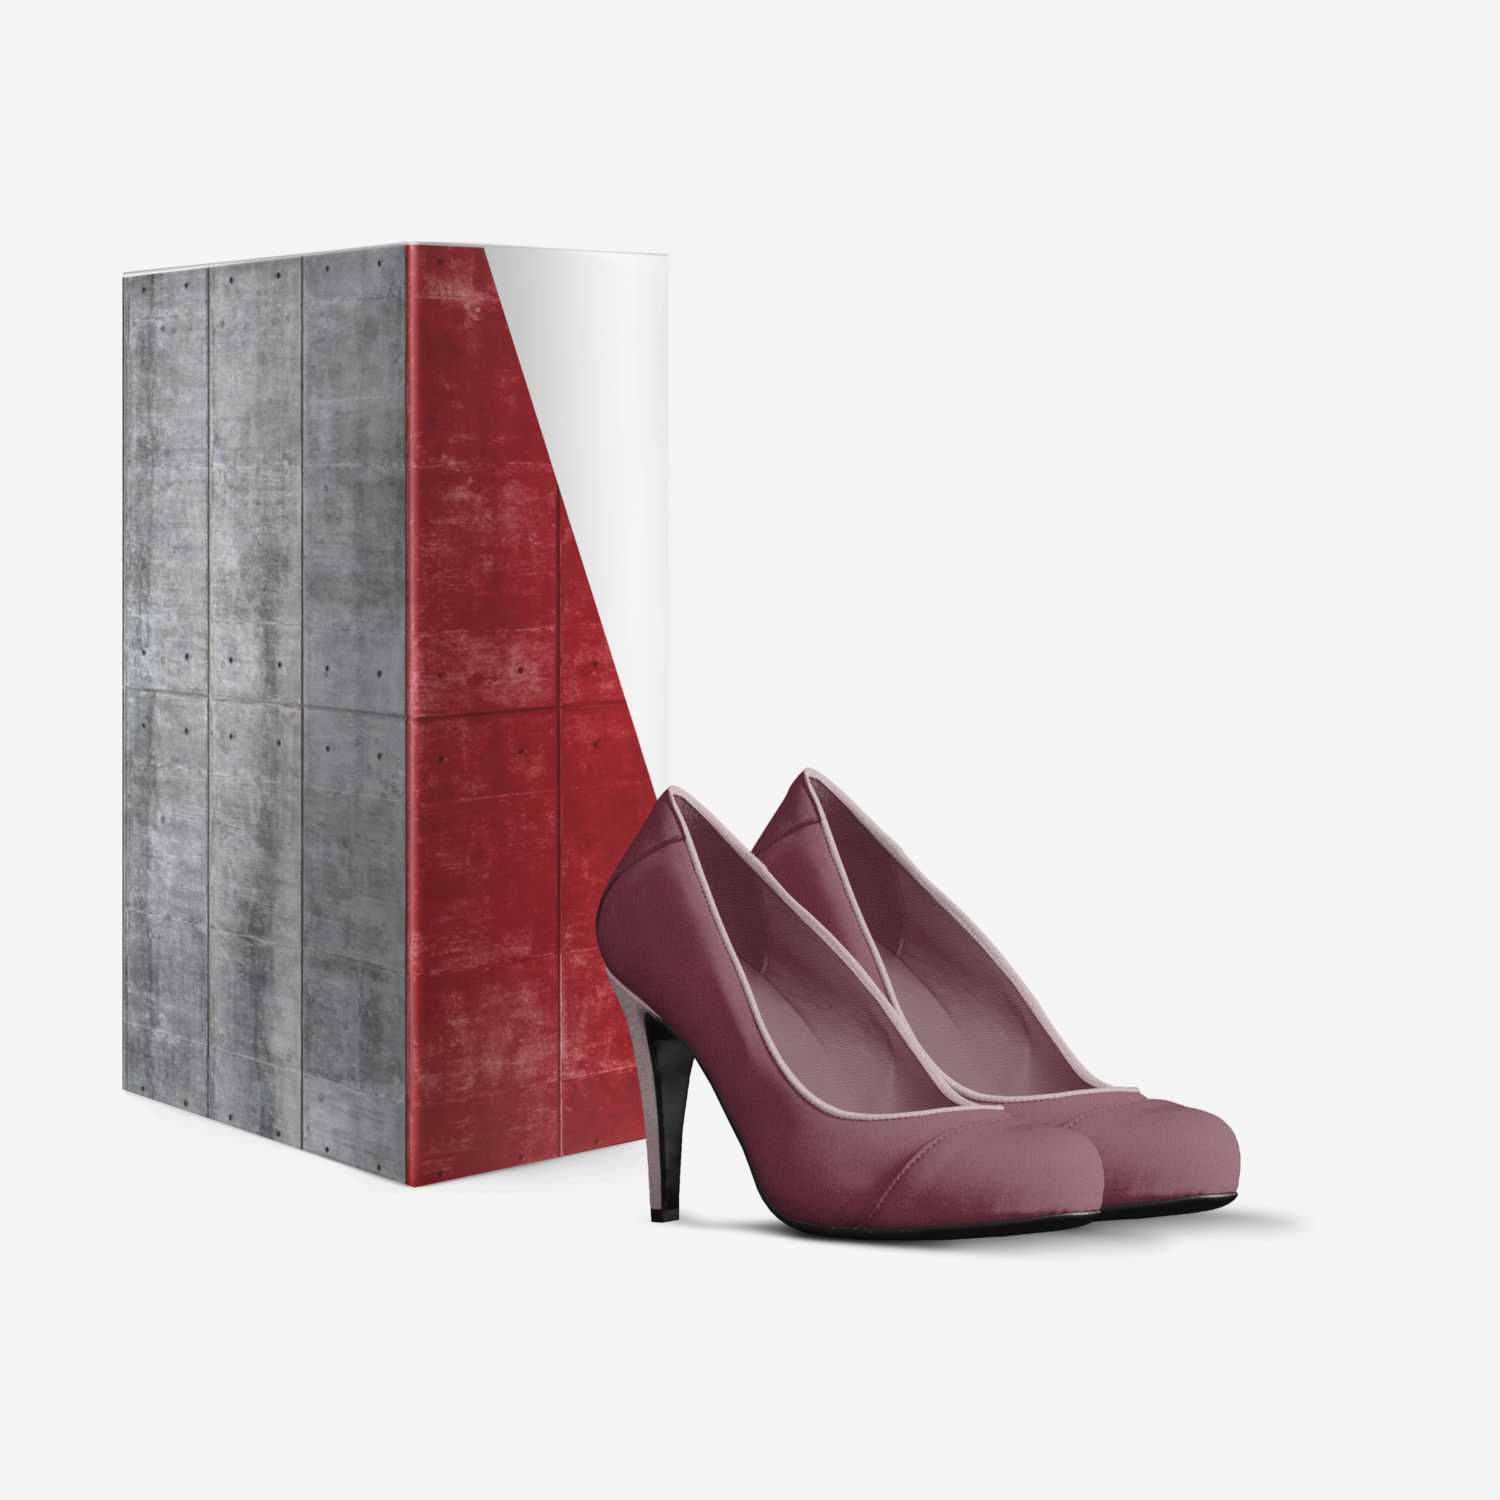 città proibita custom made in Italy shoes by Maria Cristina Annoni | Box view